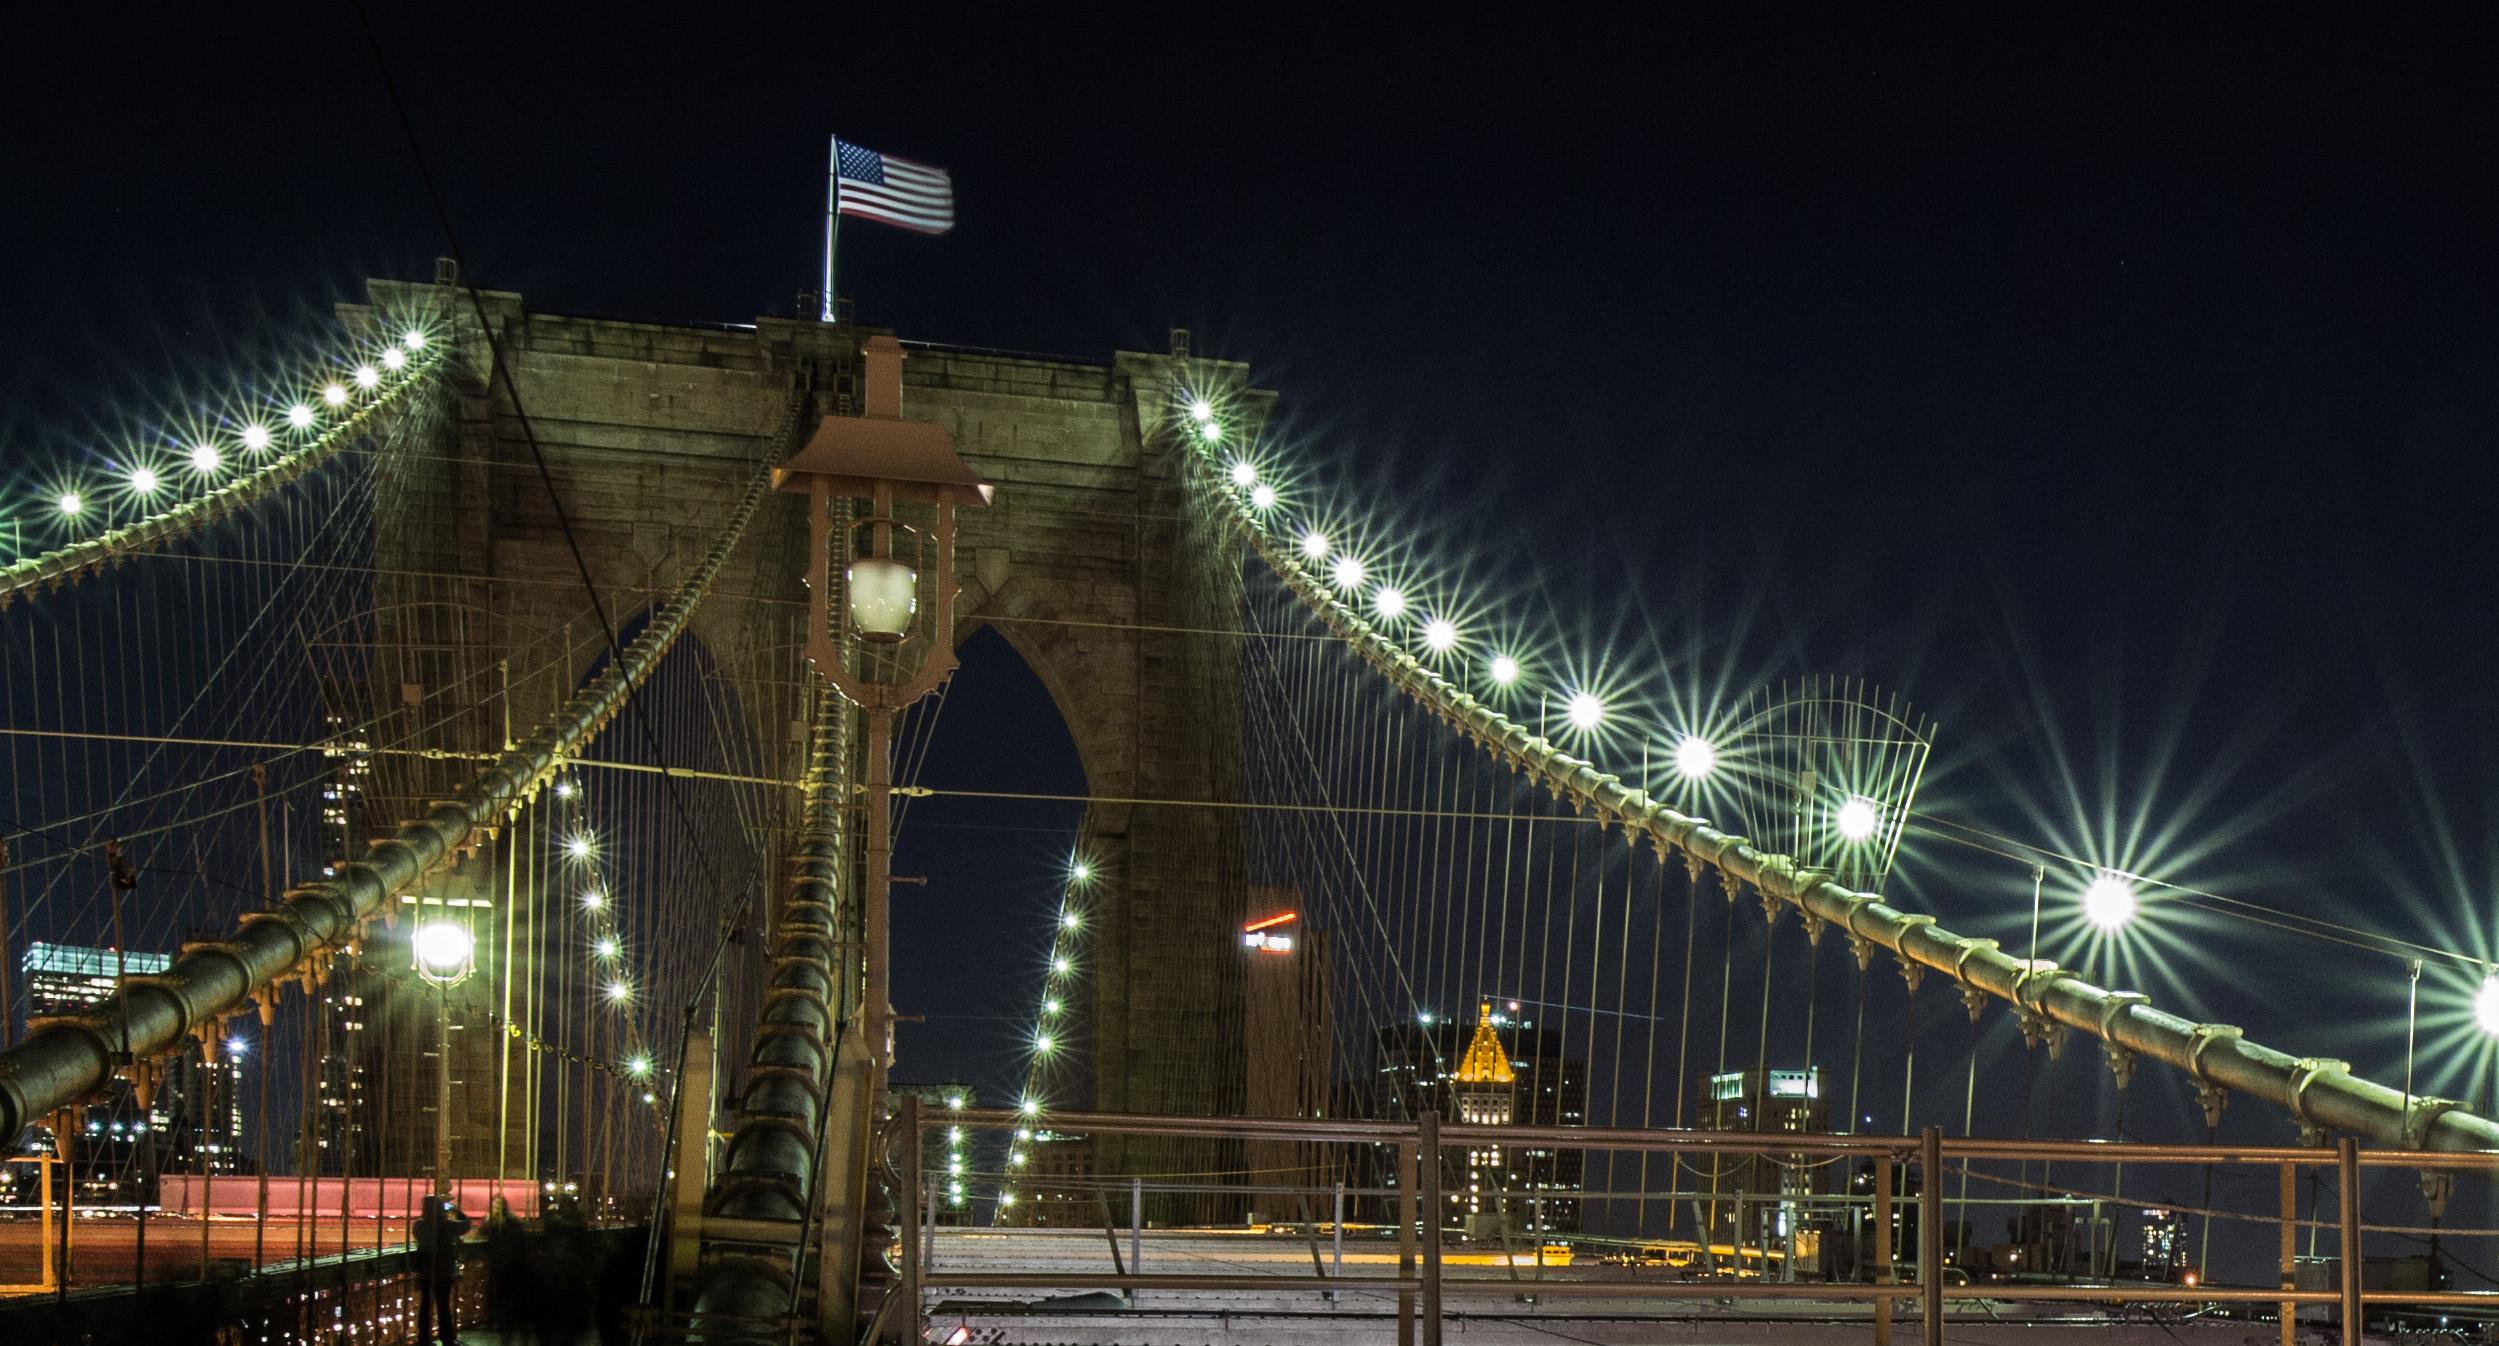 Le pont de Brooklyn, photographie originale de paysage urbain, 2017
10